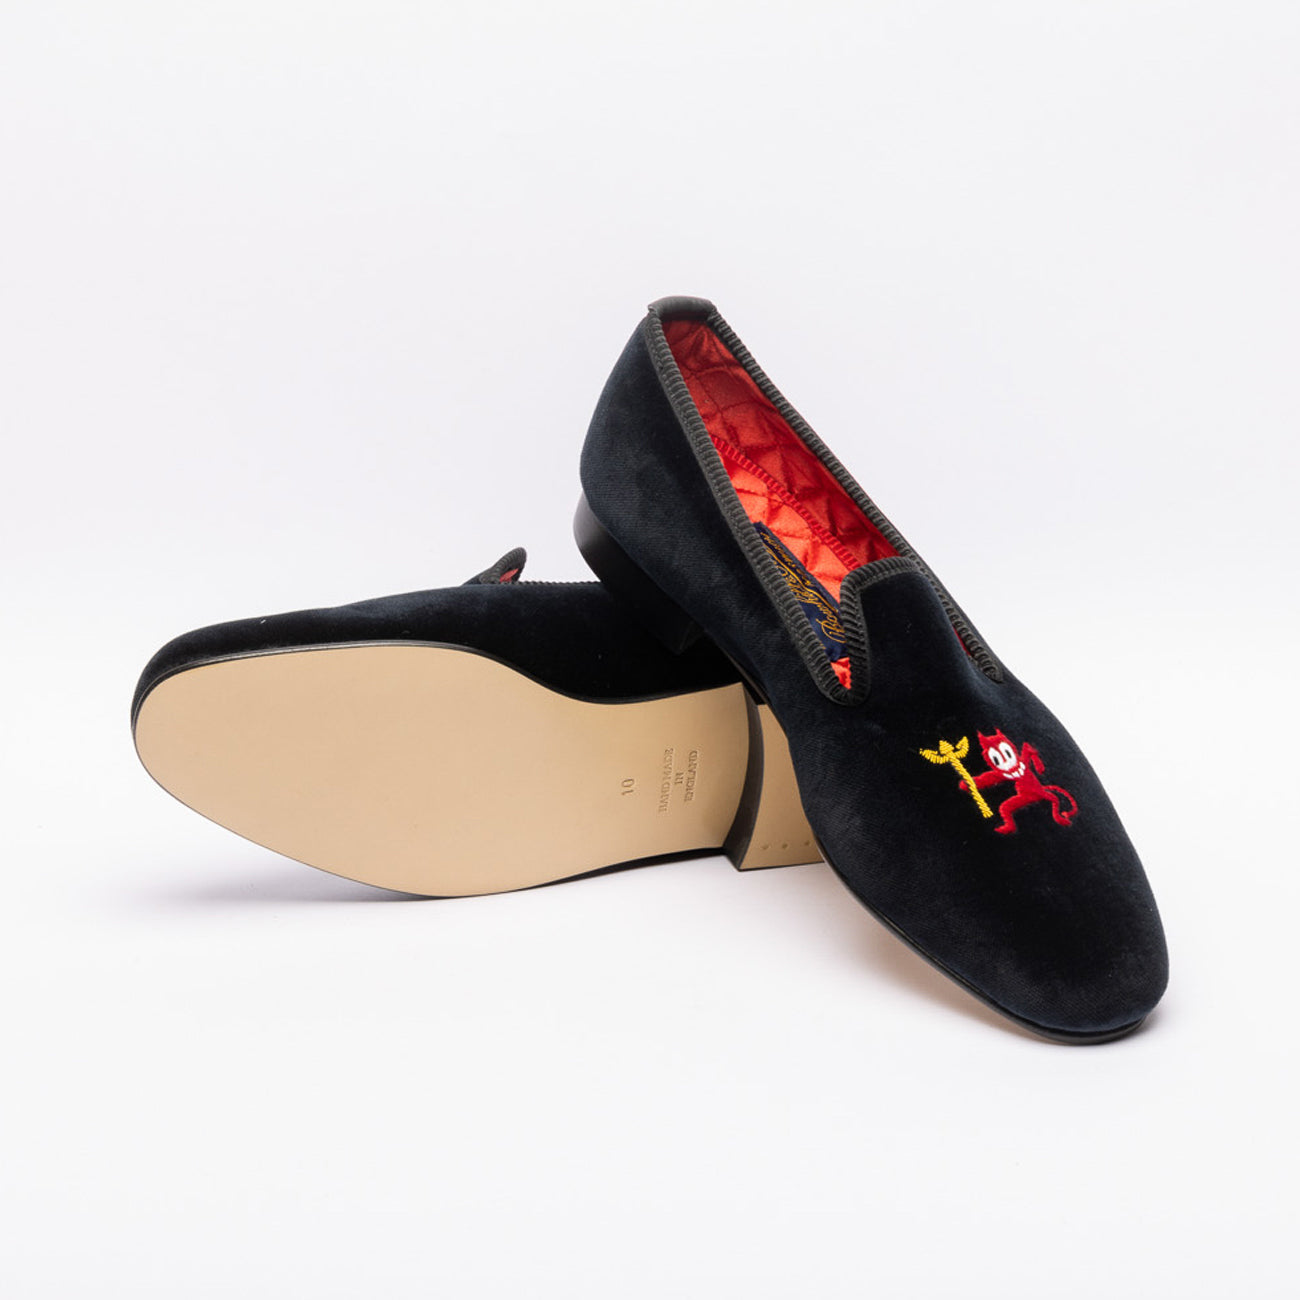 Bowhill & Elliott Devil with Trident velvet slipper in black